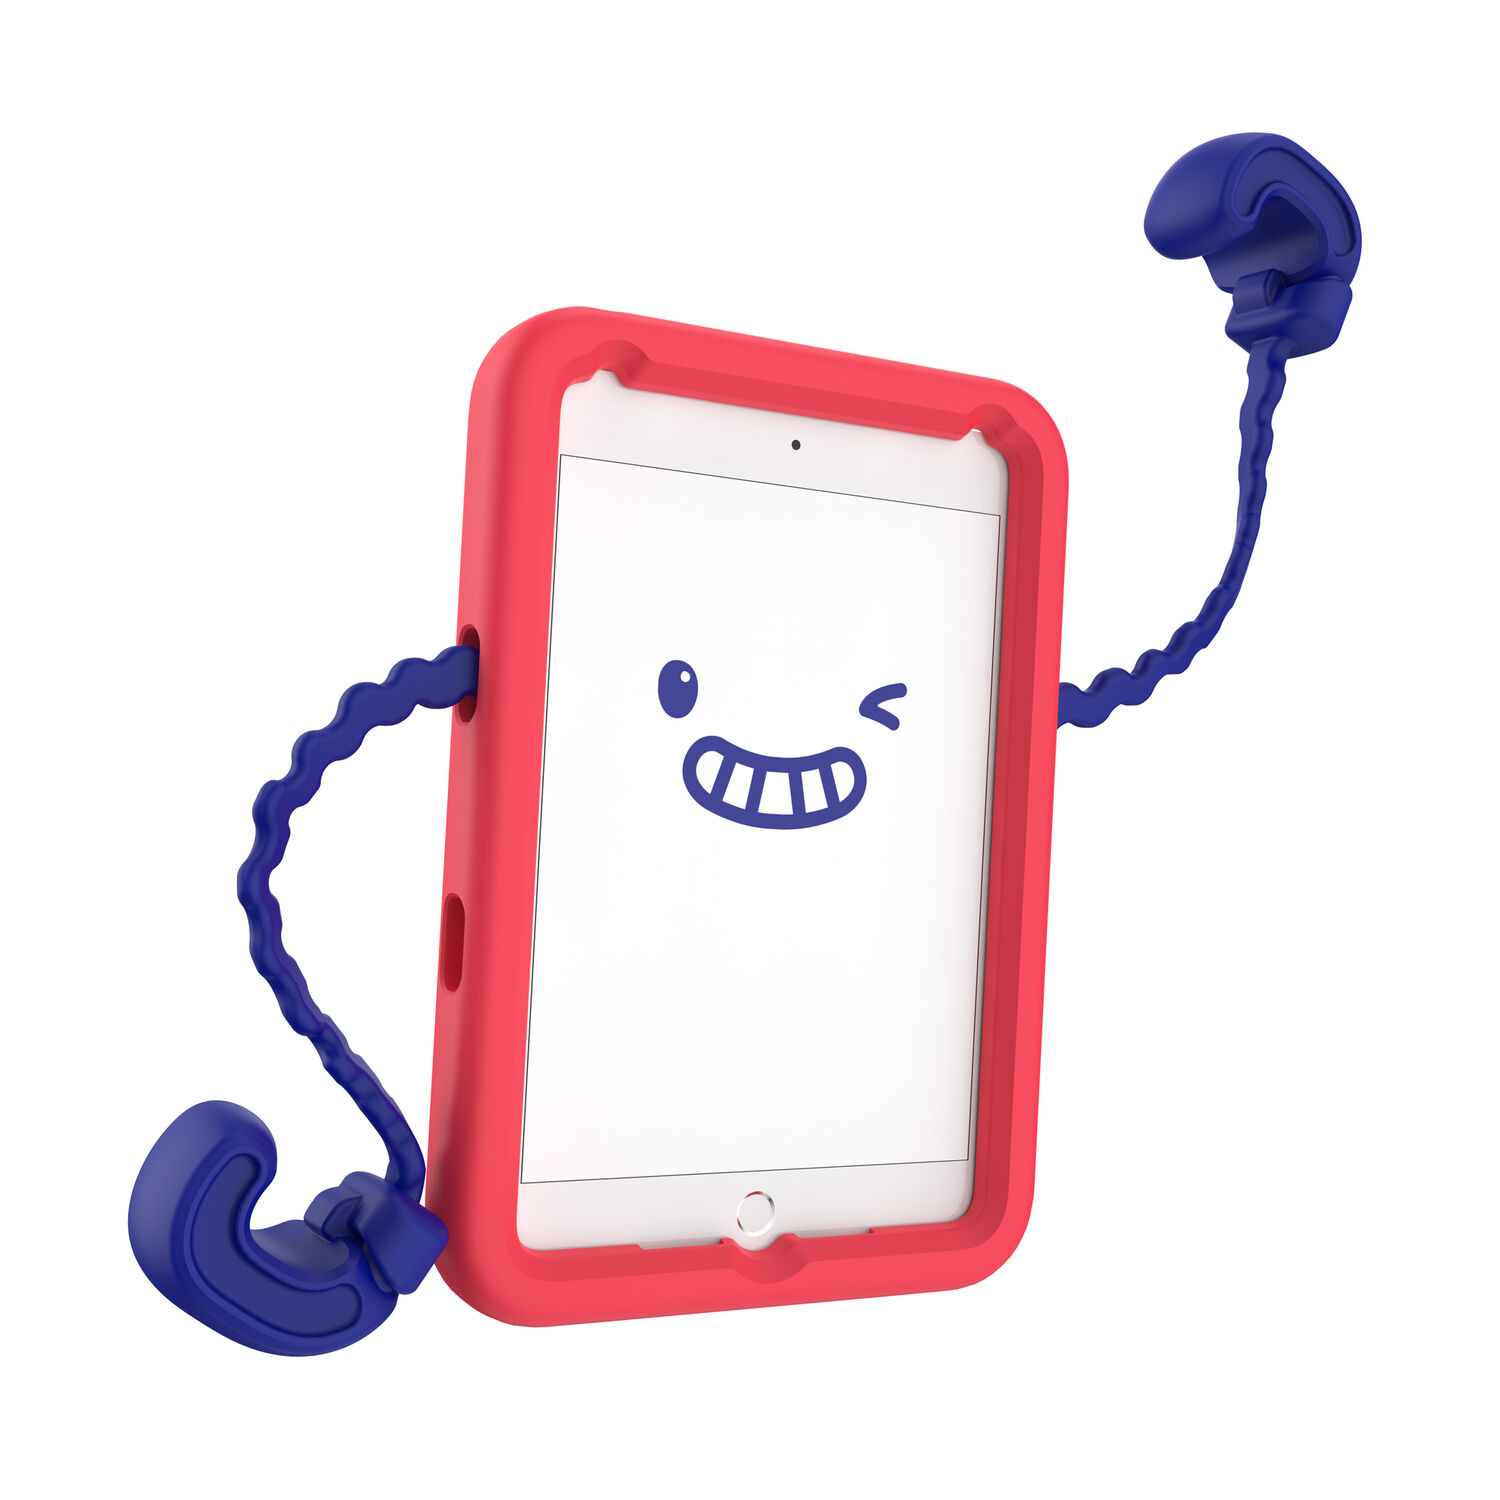 Speck Case-E Sandia Red/Brilliant Blue for iPad Mini 4-Inch